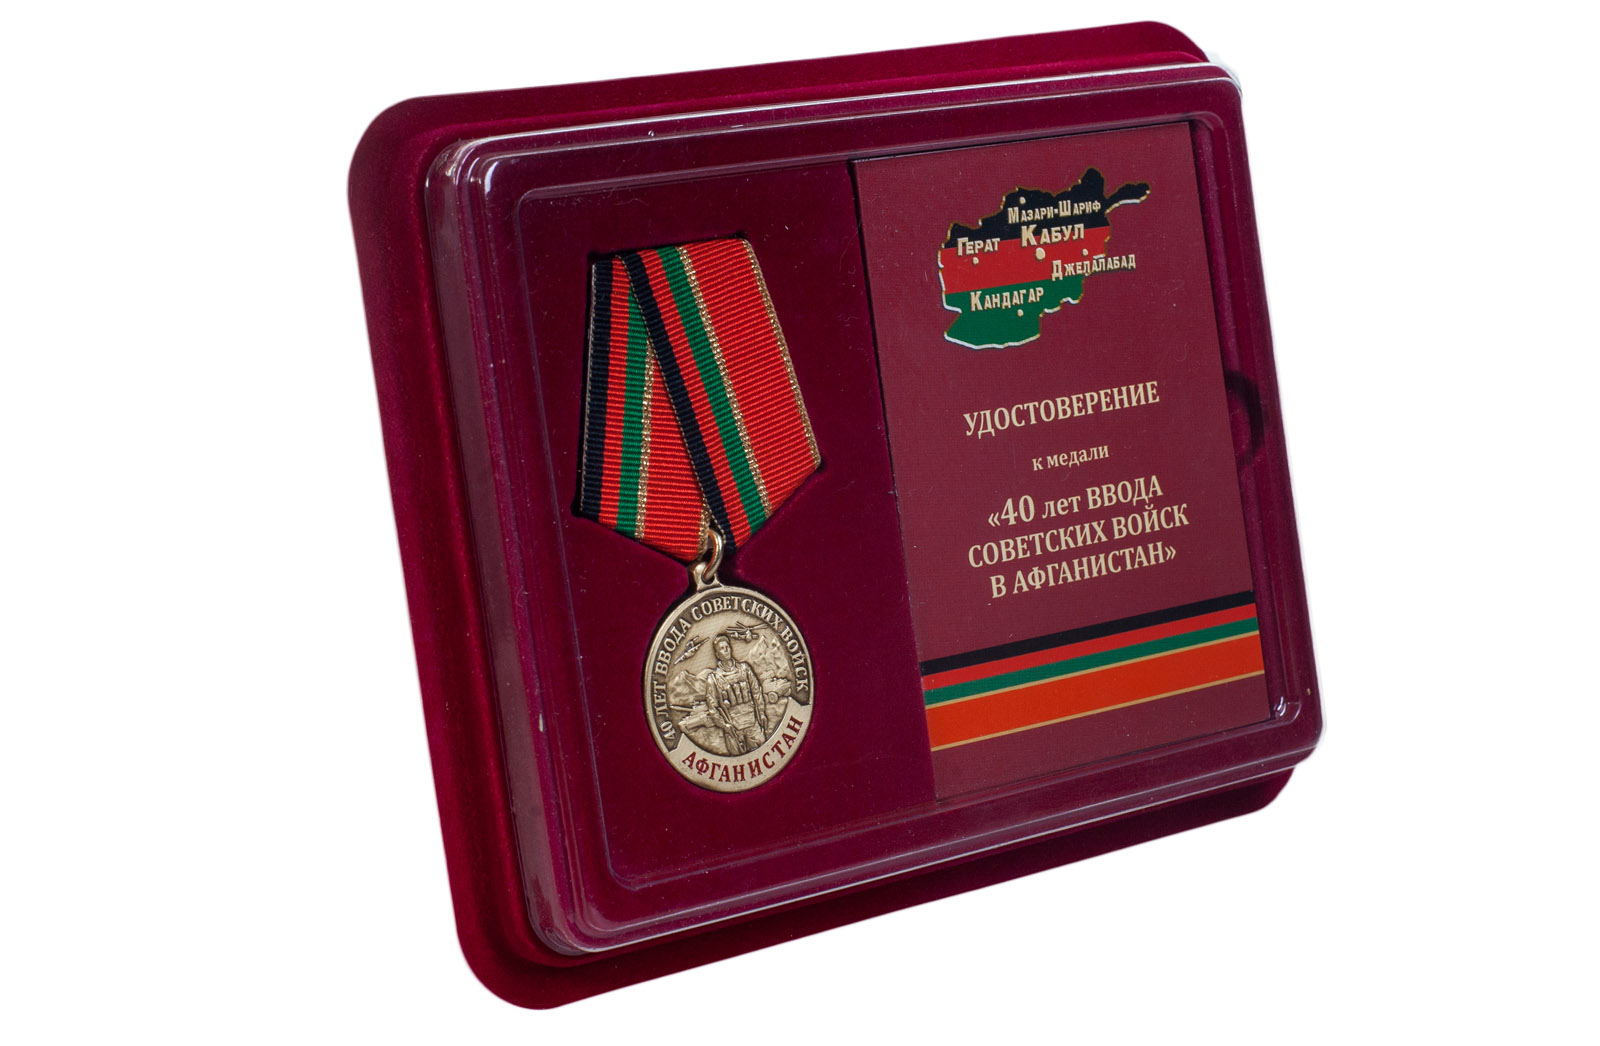 Купить медаль к 40-летию ввода Советских войск в Афганистан в футляре в подарок